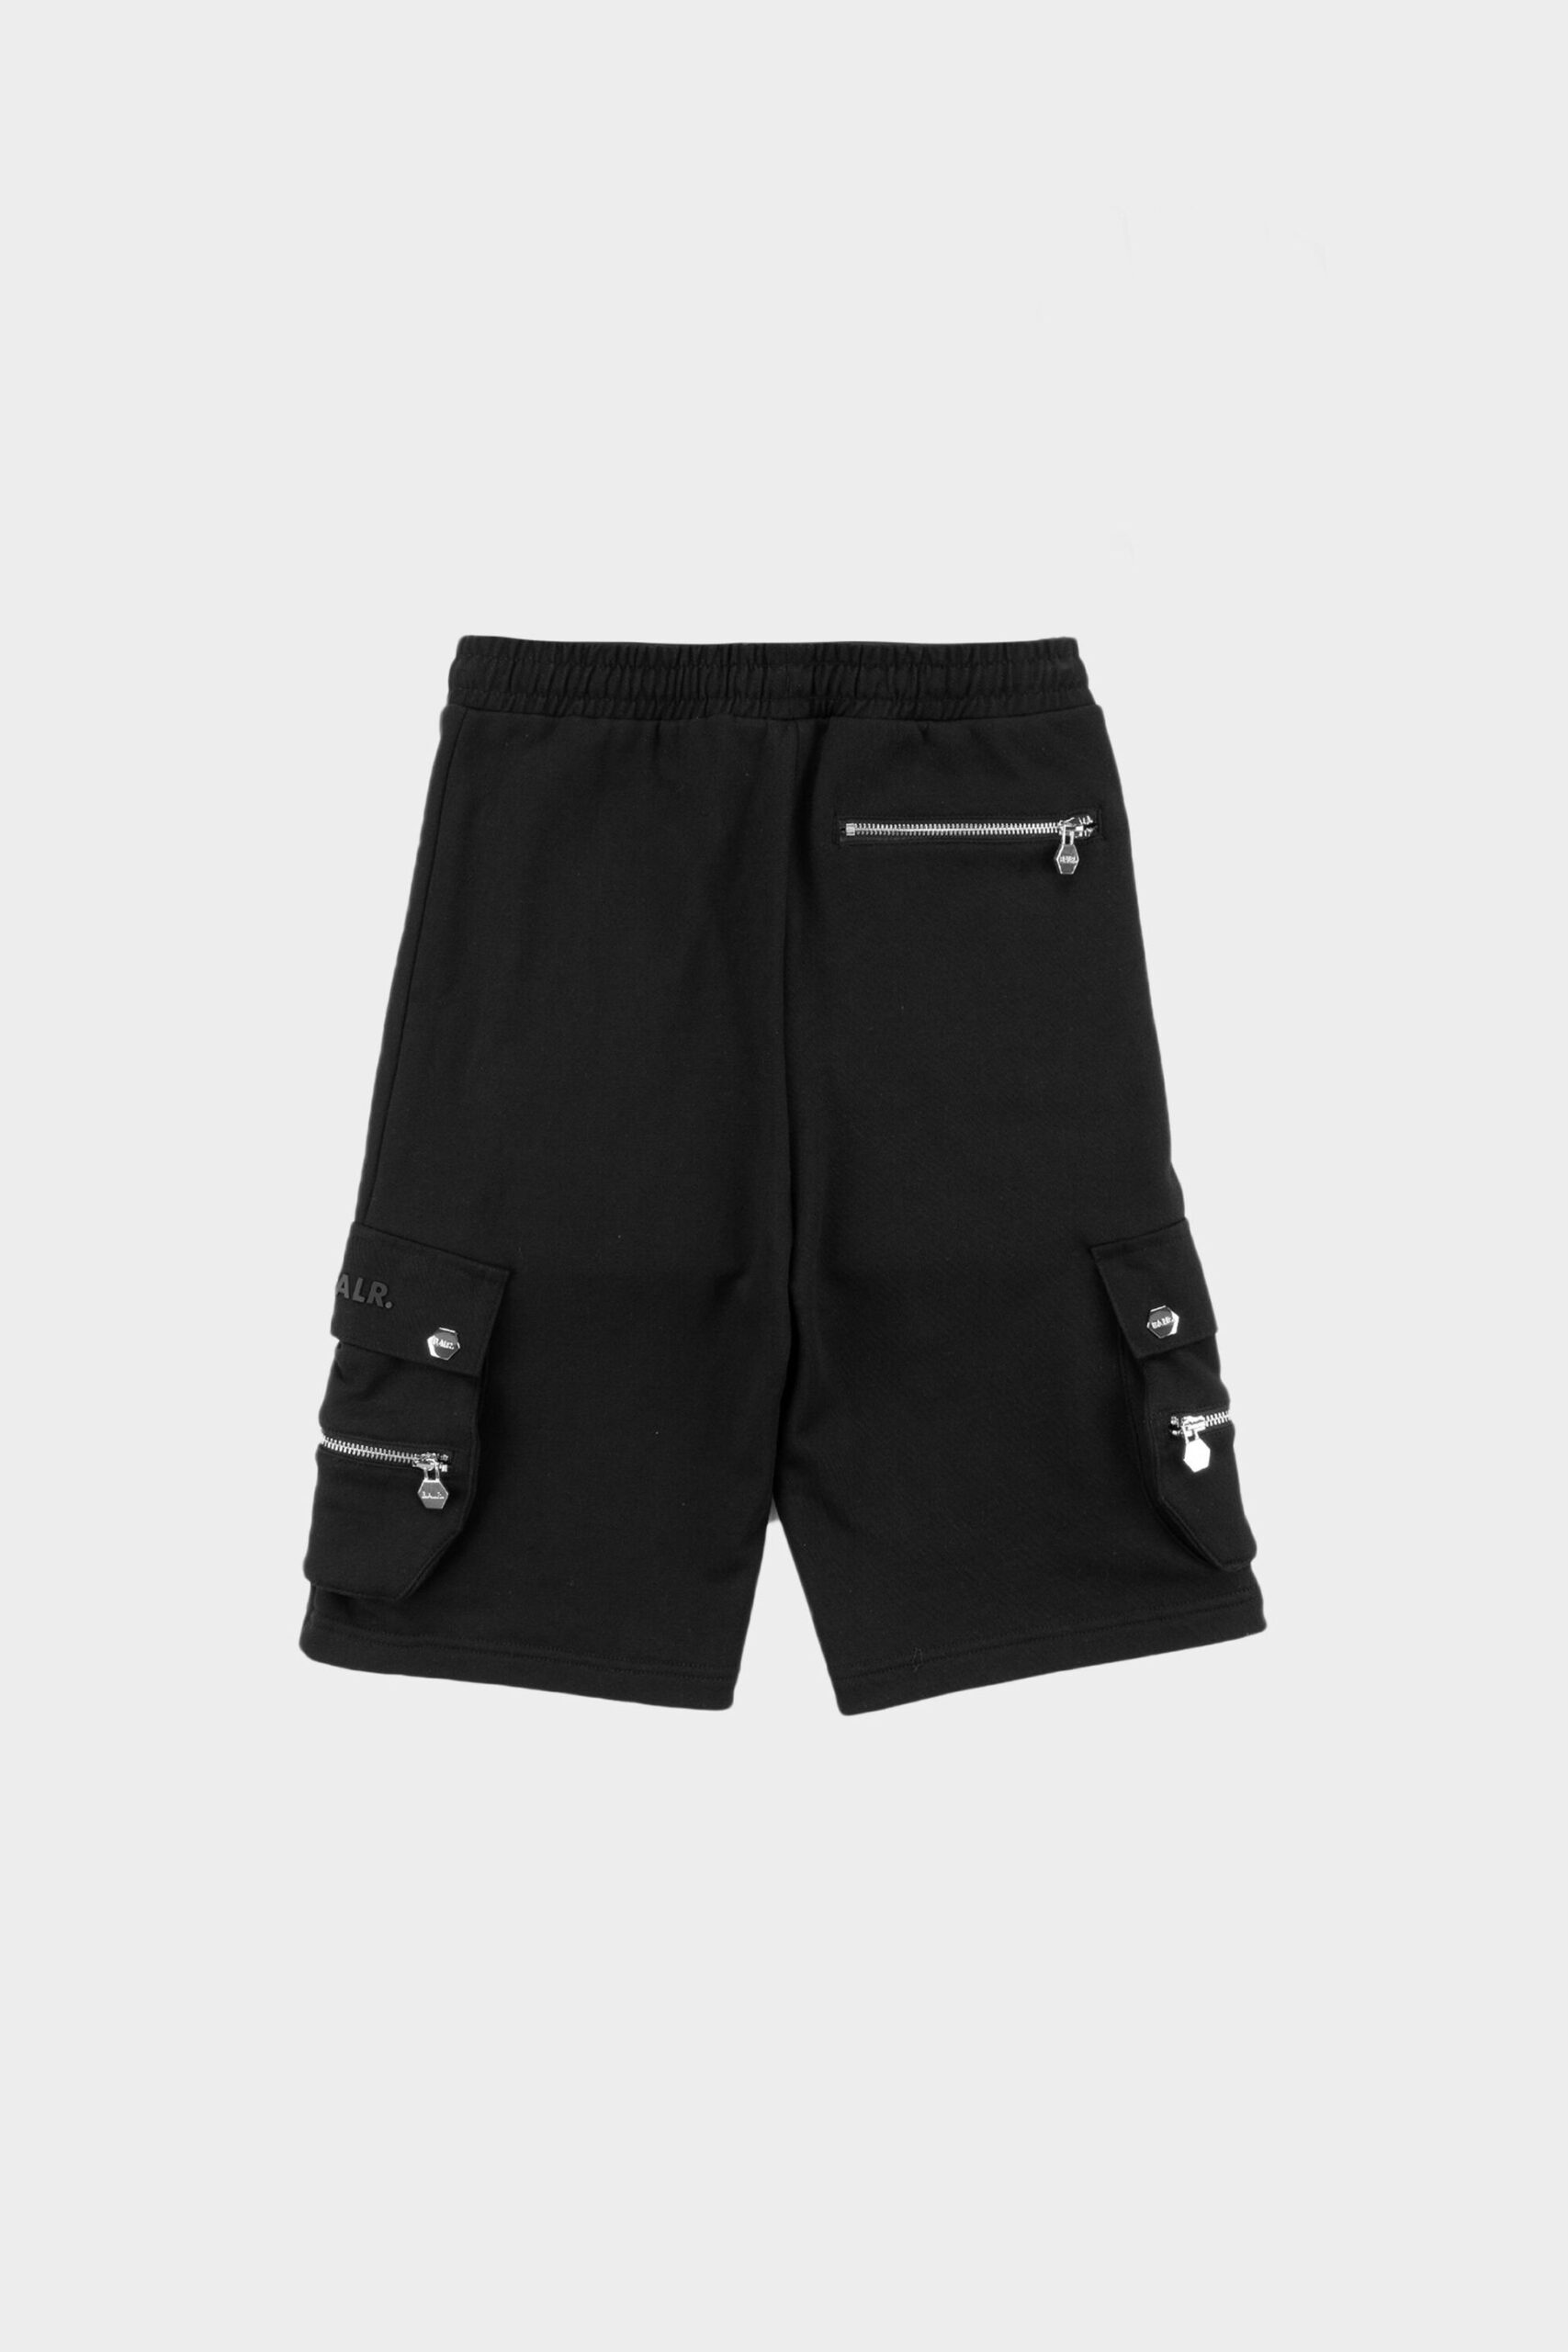 מכנס דגמח קצר באלר בצבע שחור דגם BALR - CARGO STRAIGHT SHORTS - חנות